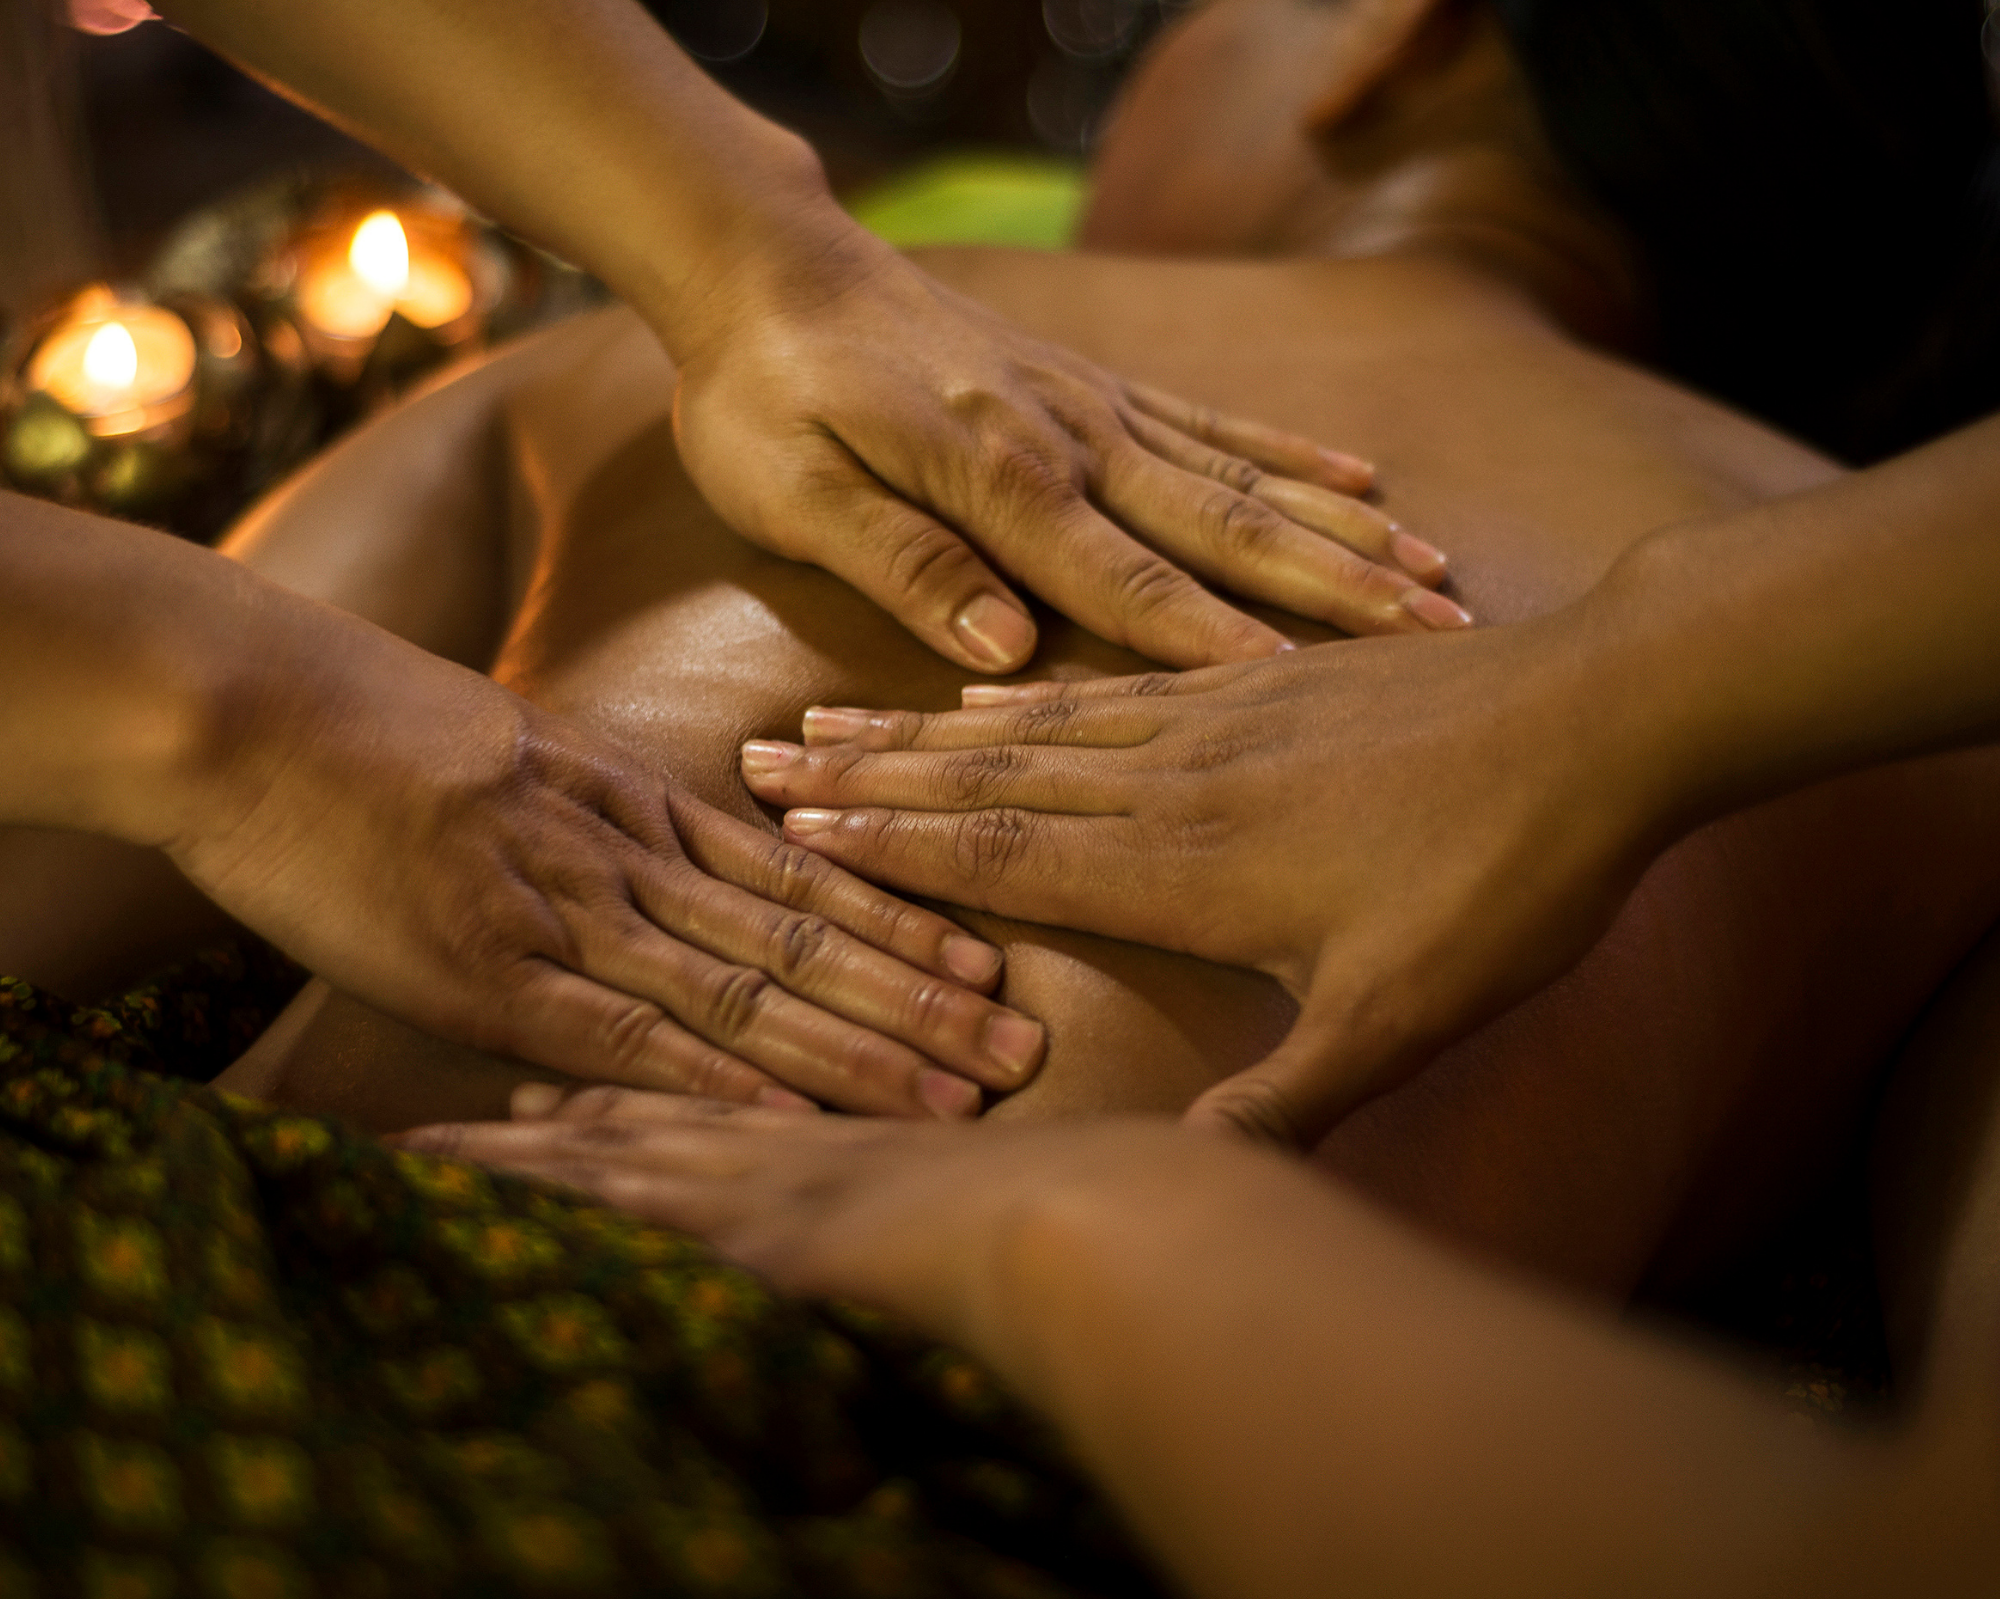 Королевский тайский массаж в 4 руки. Массаж рук. Королевский массаж для мужчин. Балийский массаж мужчине. Тайский массаж для мужчин видео